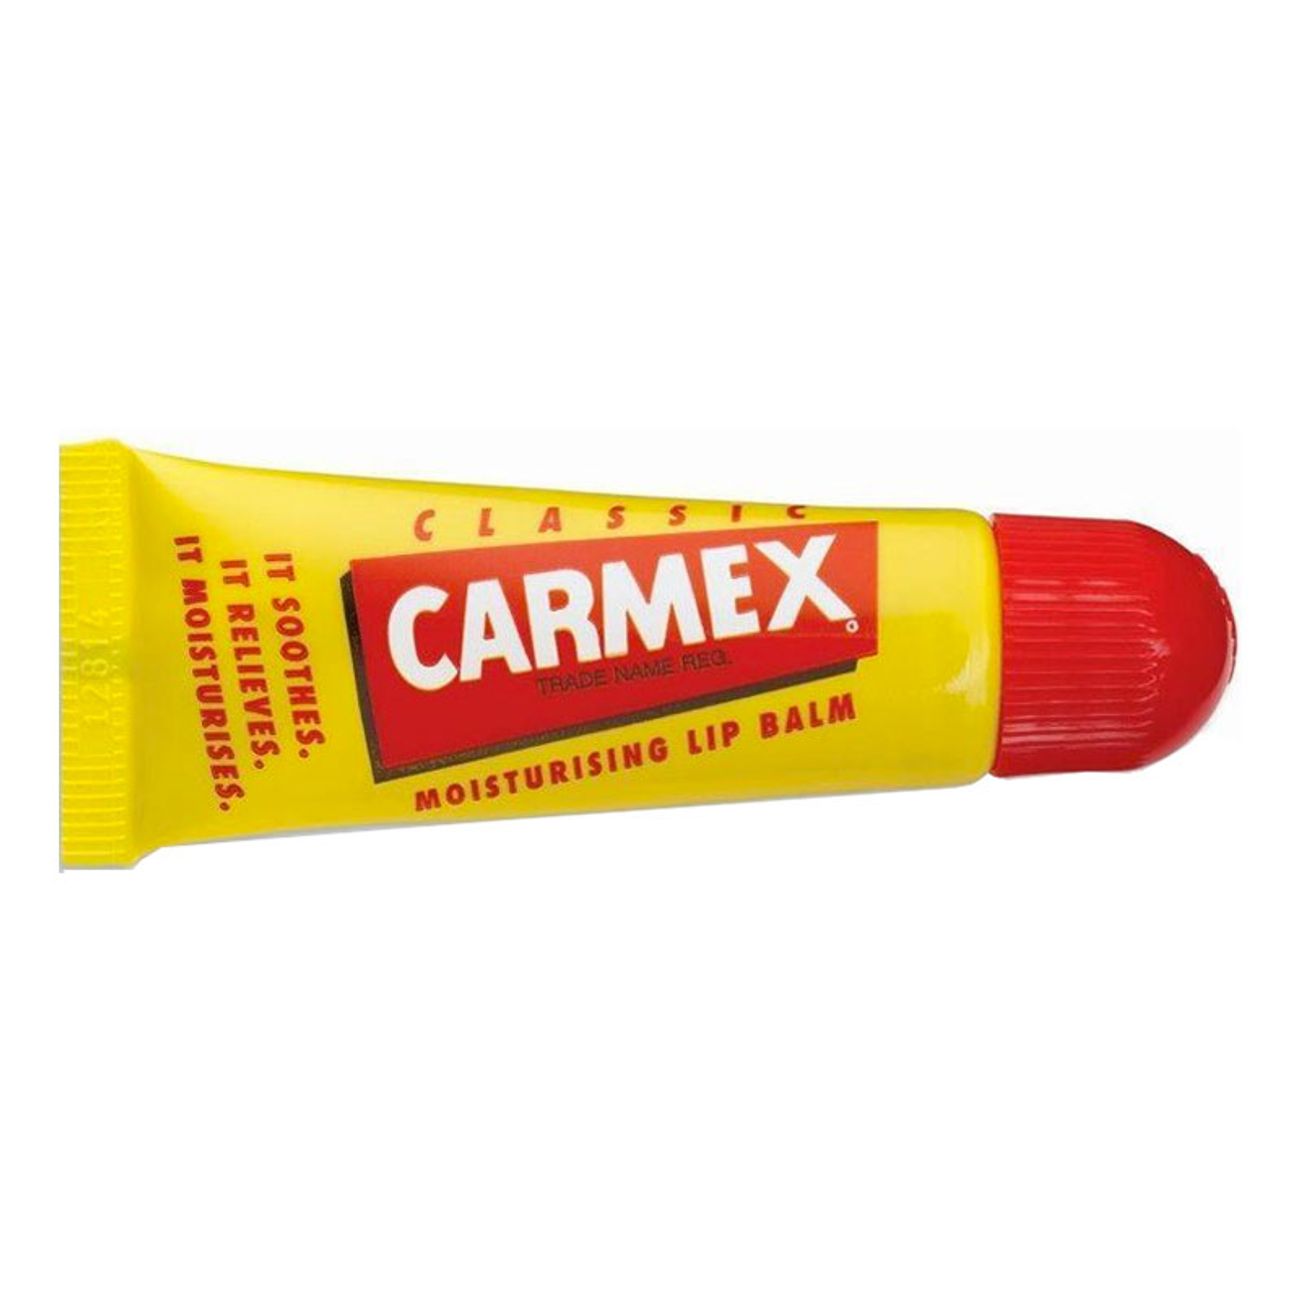 carmex-tub-lappbalsam-1